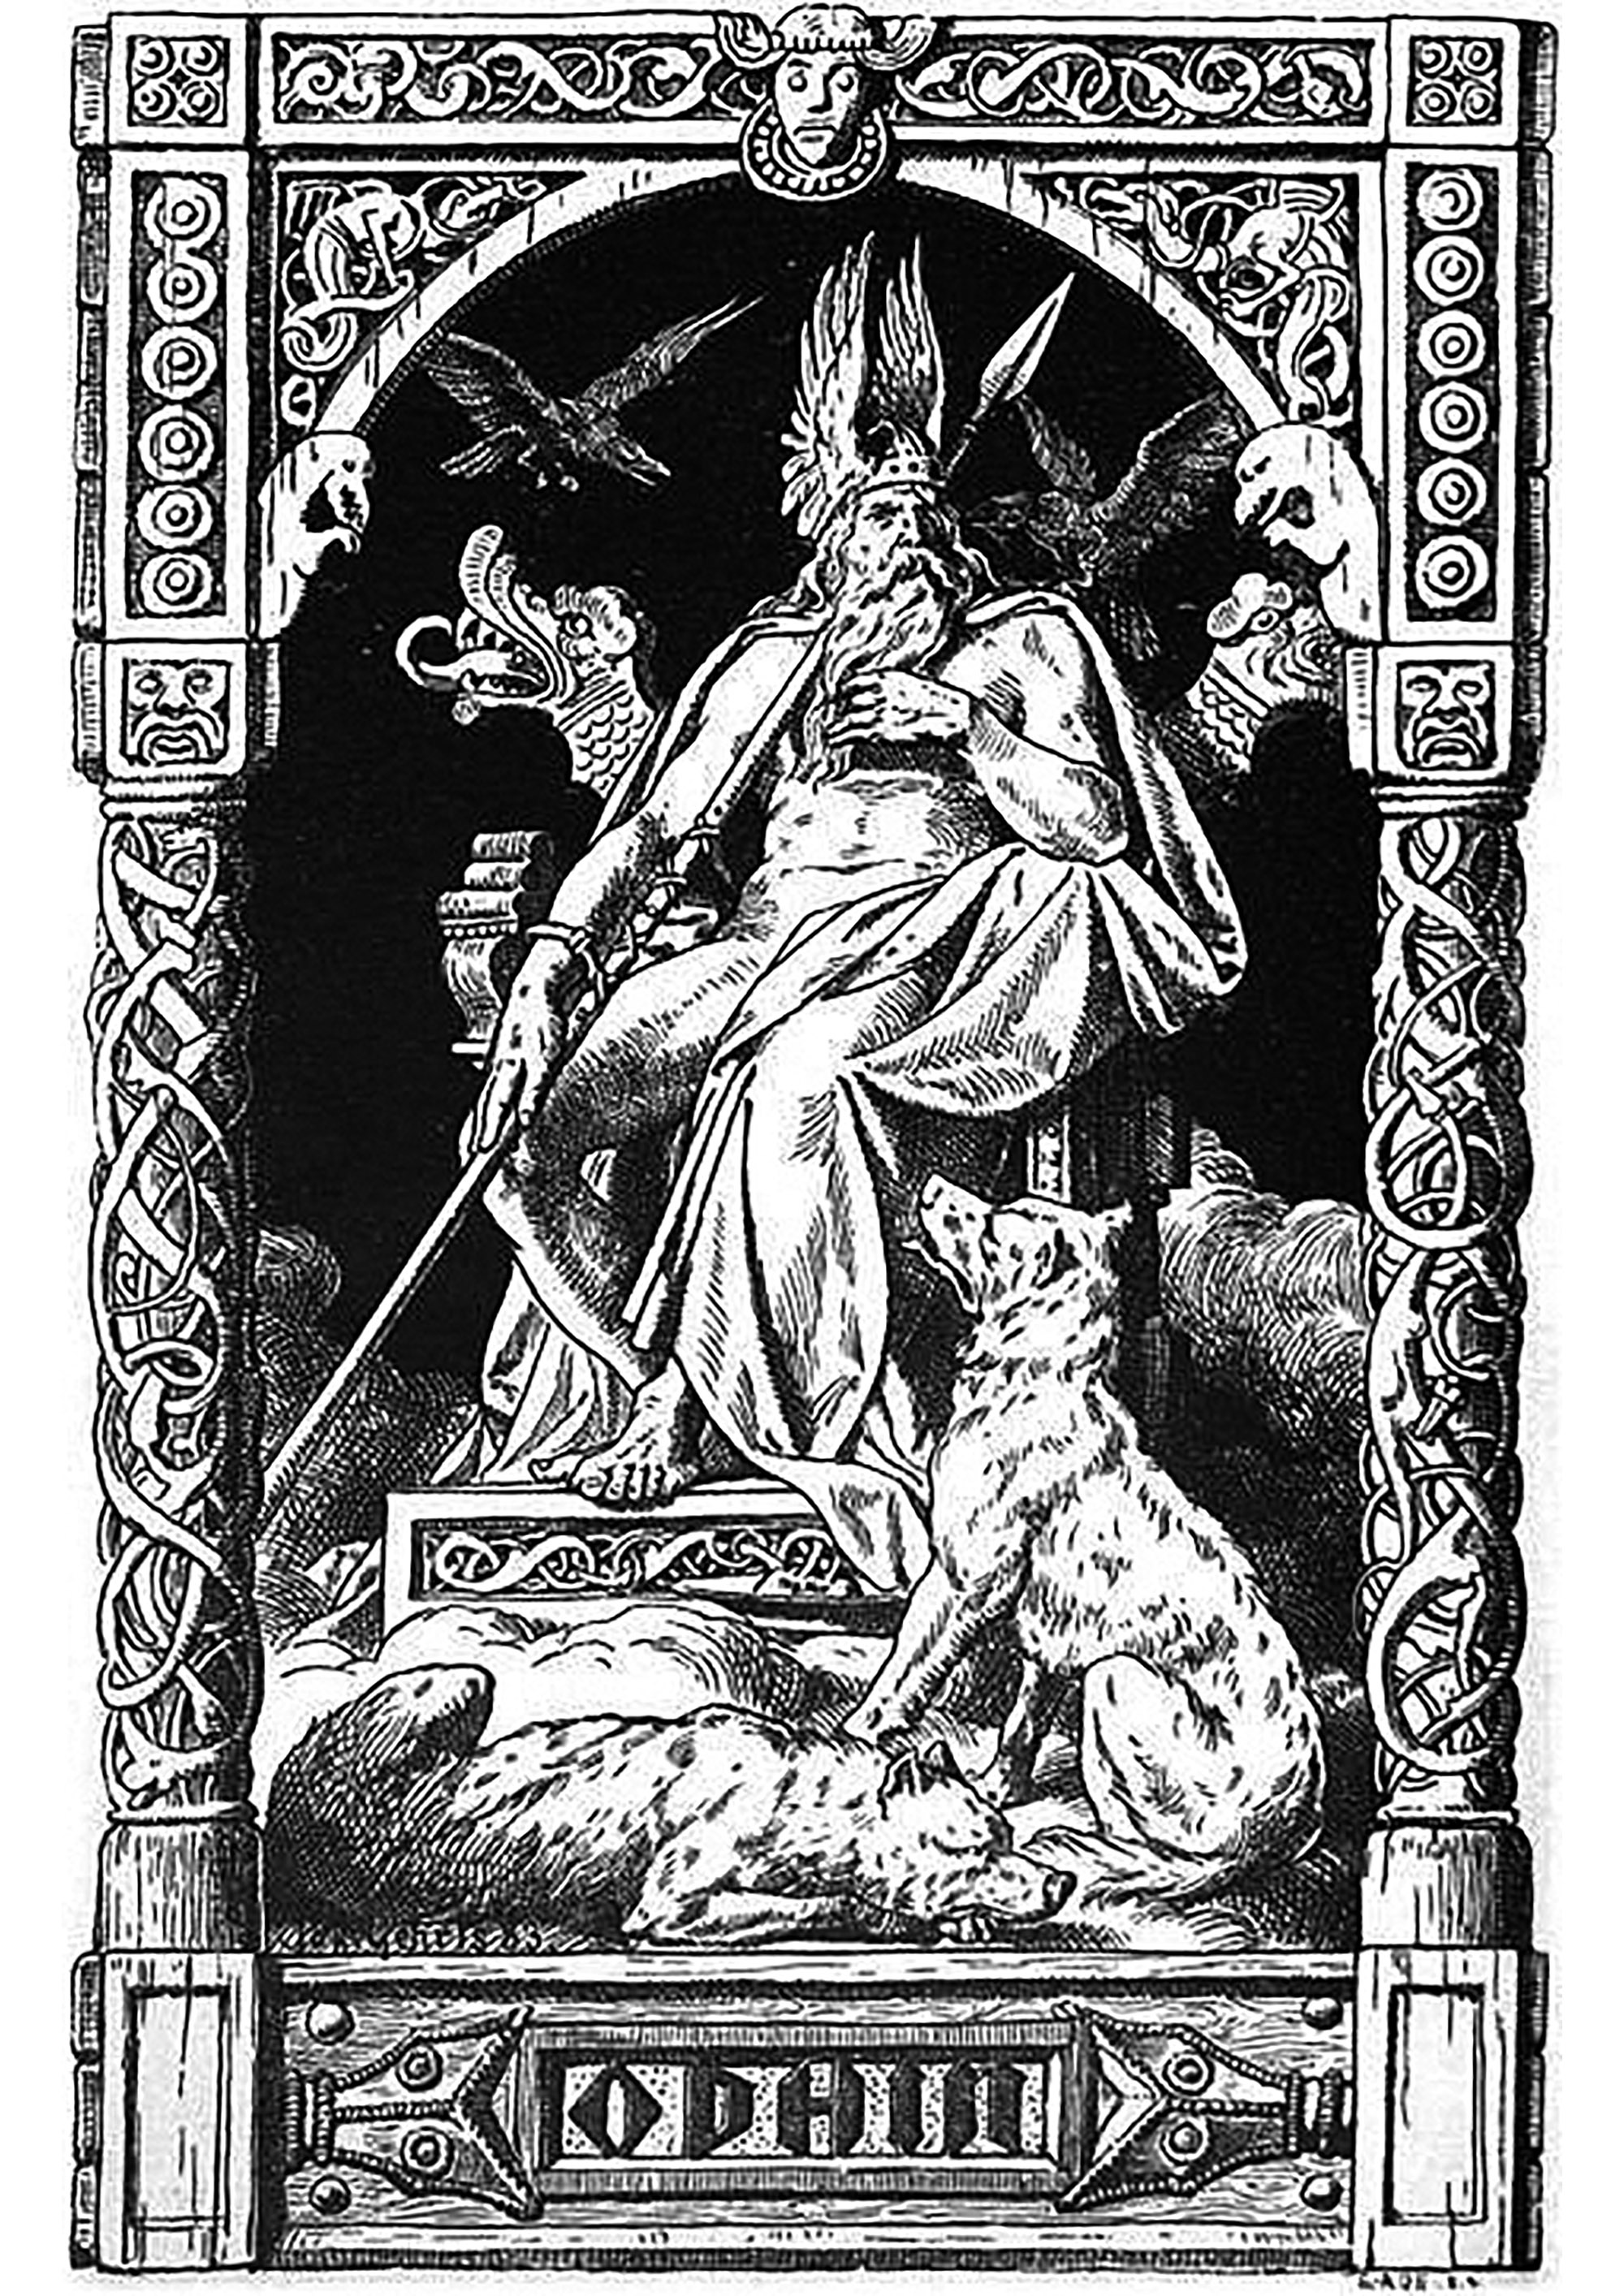 Odin - ilustração de Johannes Gehrts (1855, 1921). Esta ilustração mostra Odin, o principal deus da mitologia nórdica, entronizado no seu trono. Está rodeado pelos seus dois corvos, Hugin e Munin, que são os seus mensageiros e lhe comunicam tudo o que se passa no mundo.